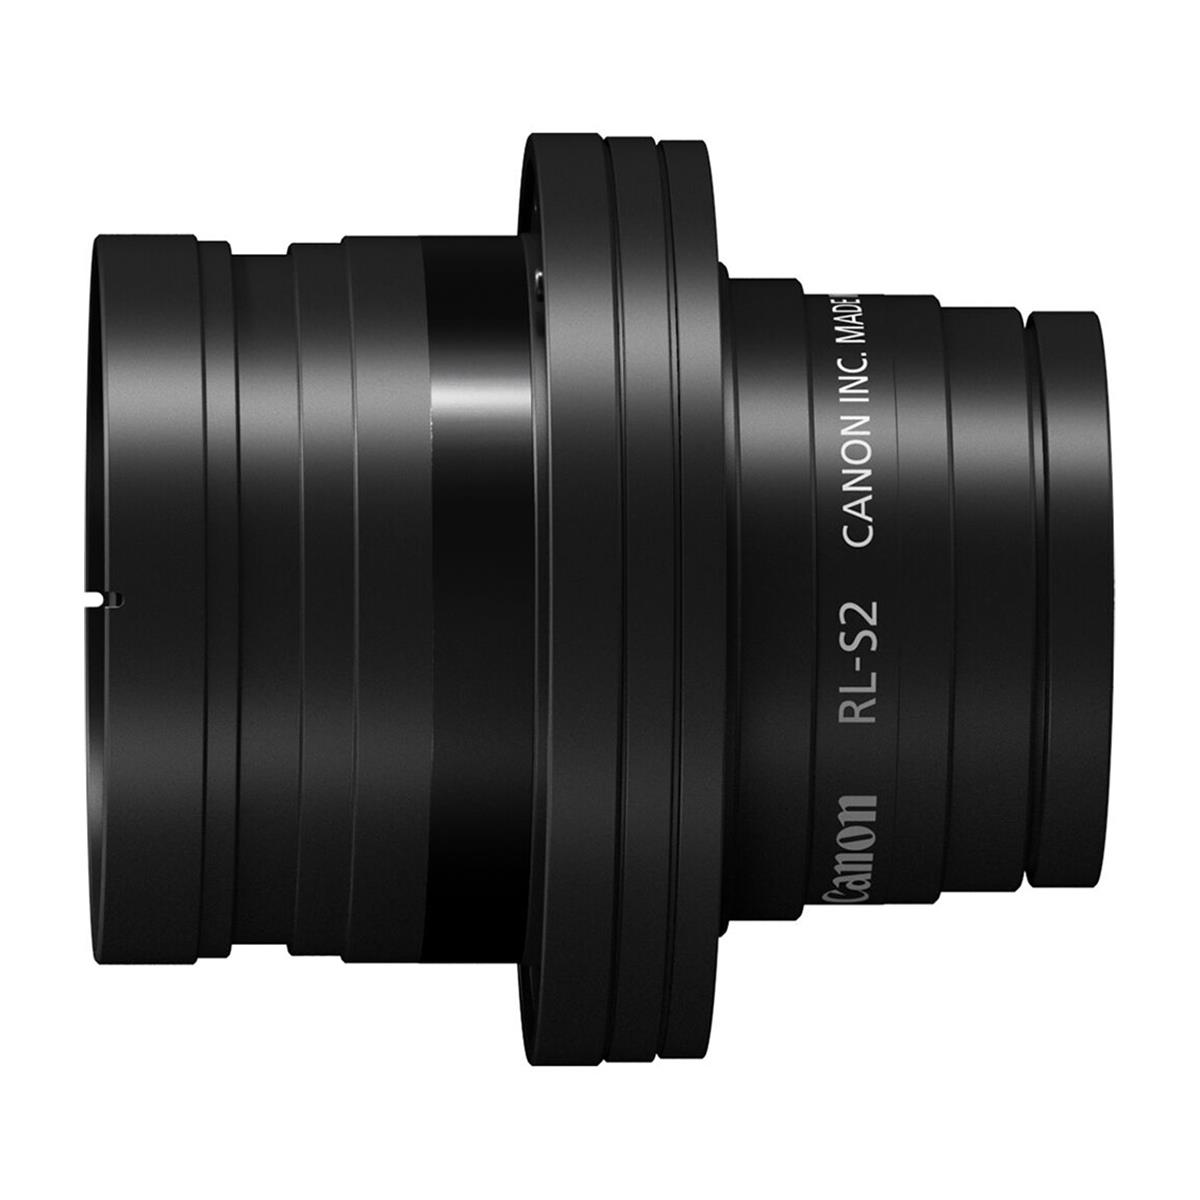 Image of Canon RL-S2 Full Frame to Super 35 Relay Kit for Flex Zoom 45-135mm T2.4 Lens